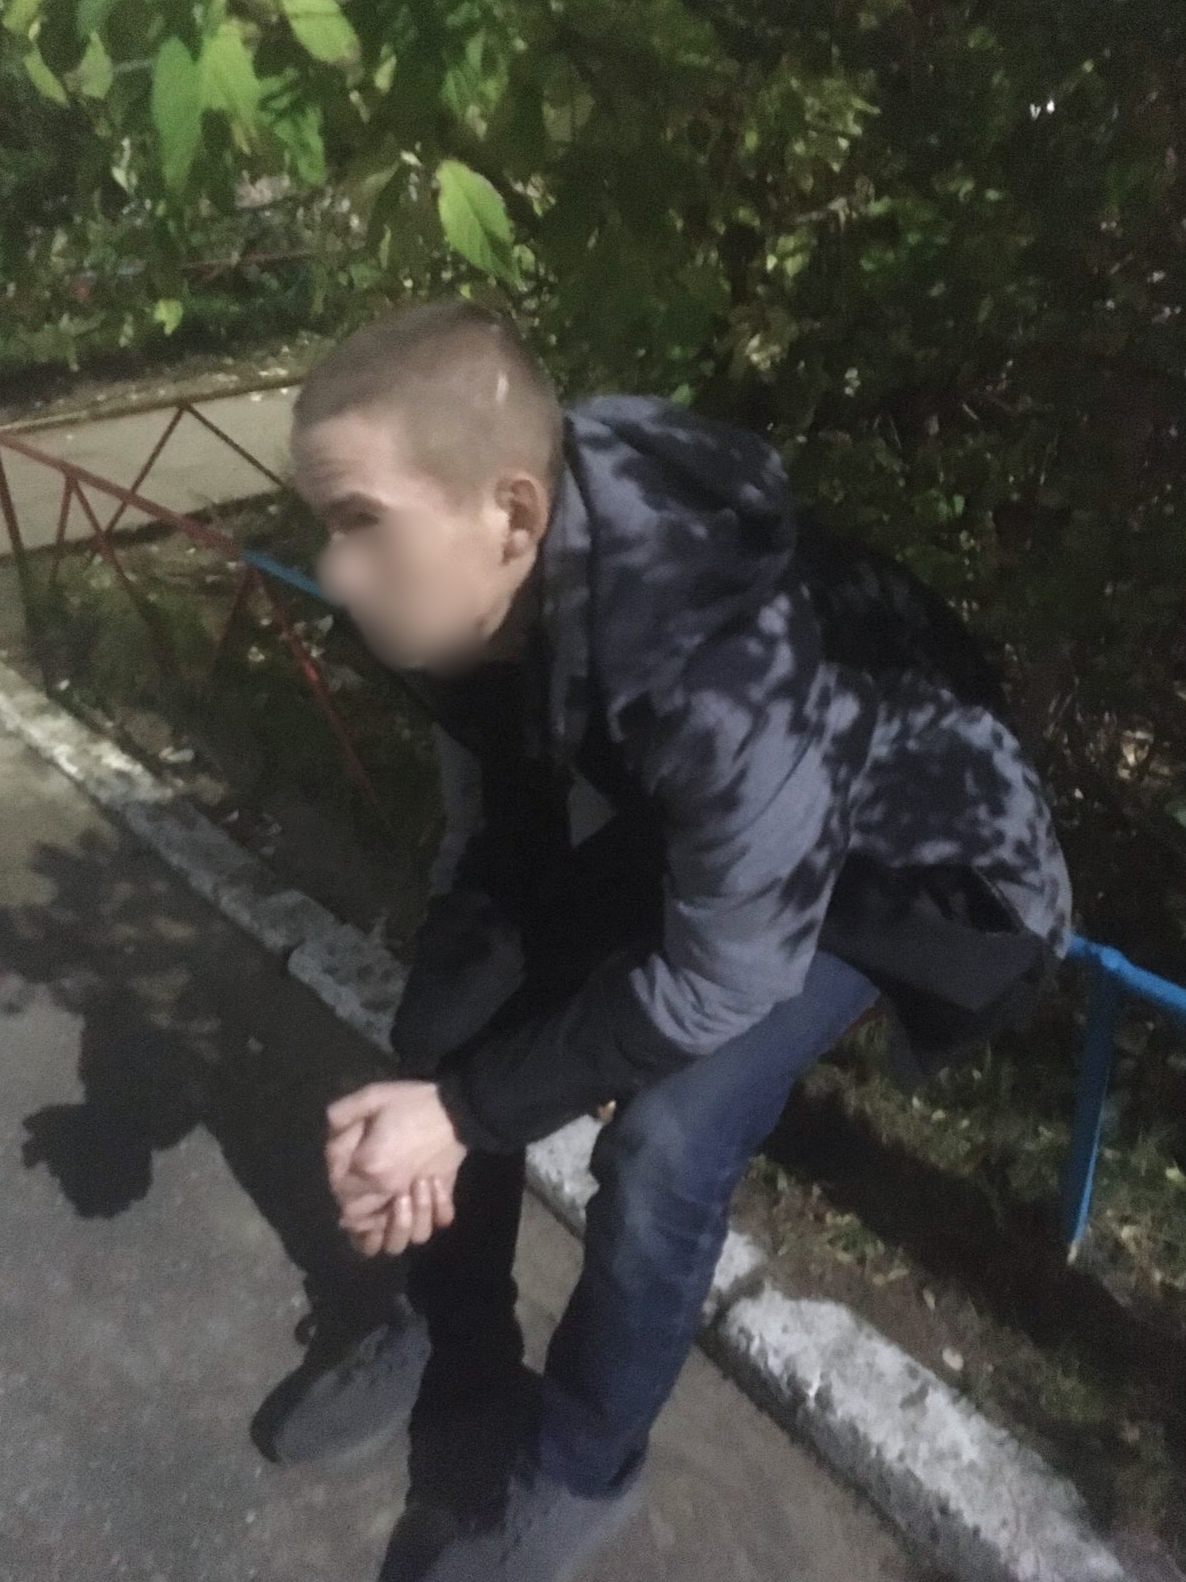 В Архангельске на территории дошкольного учреждения росгвардейцы задержали неадекватного гражданина 